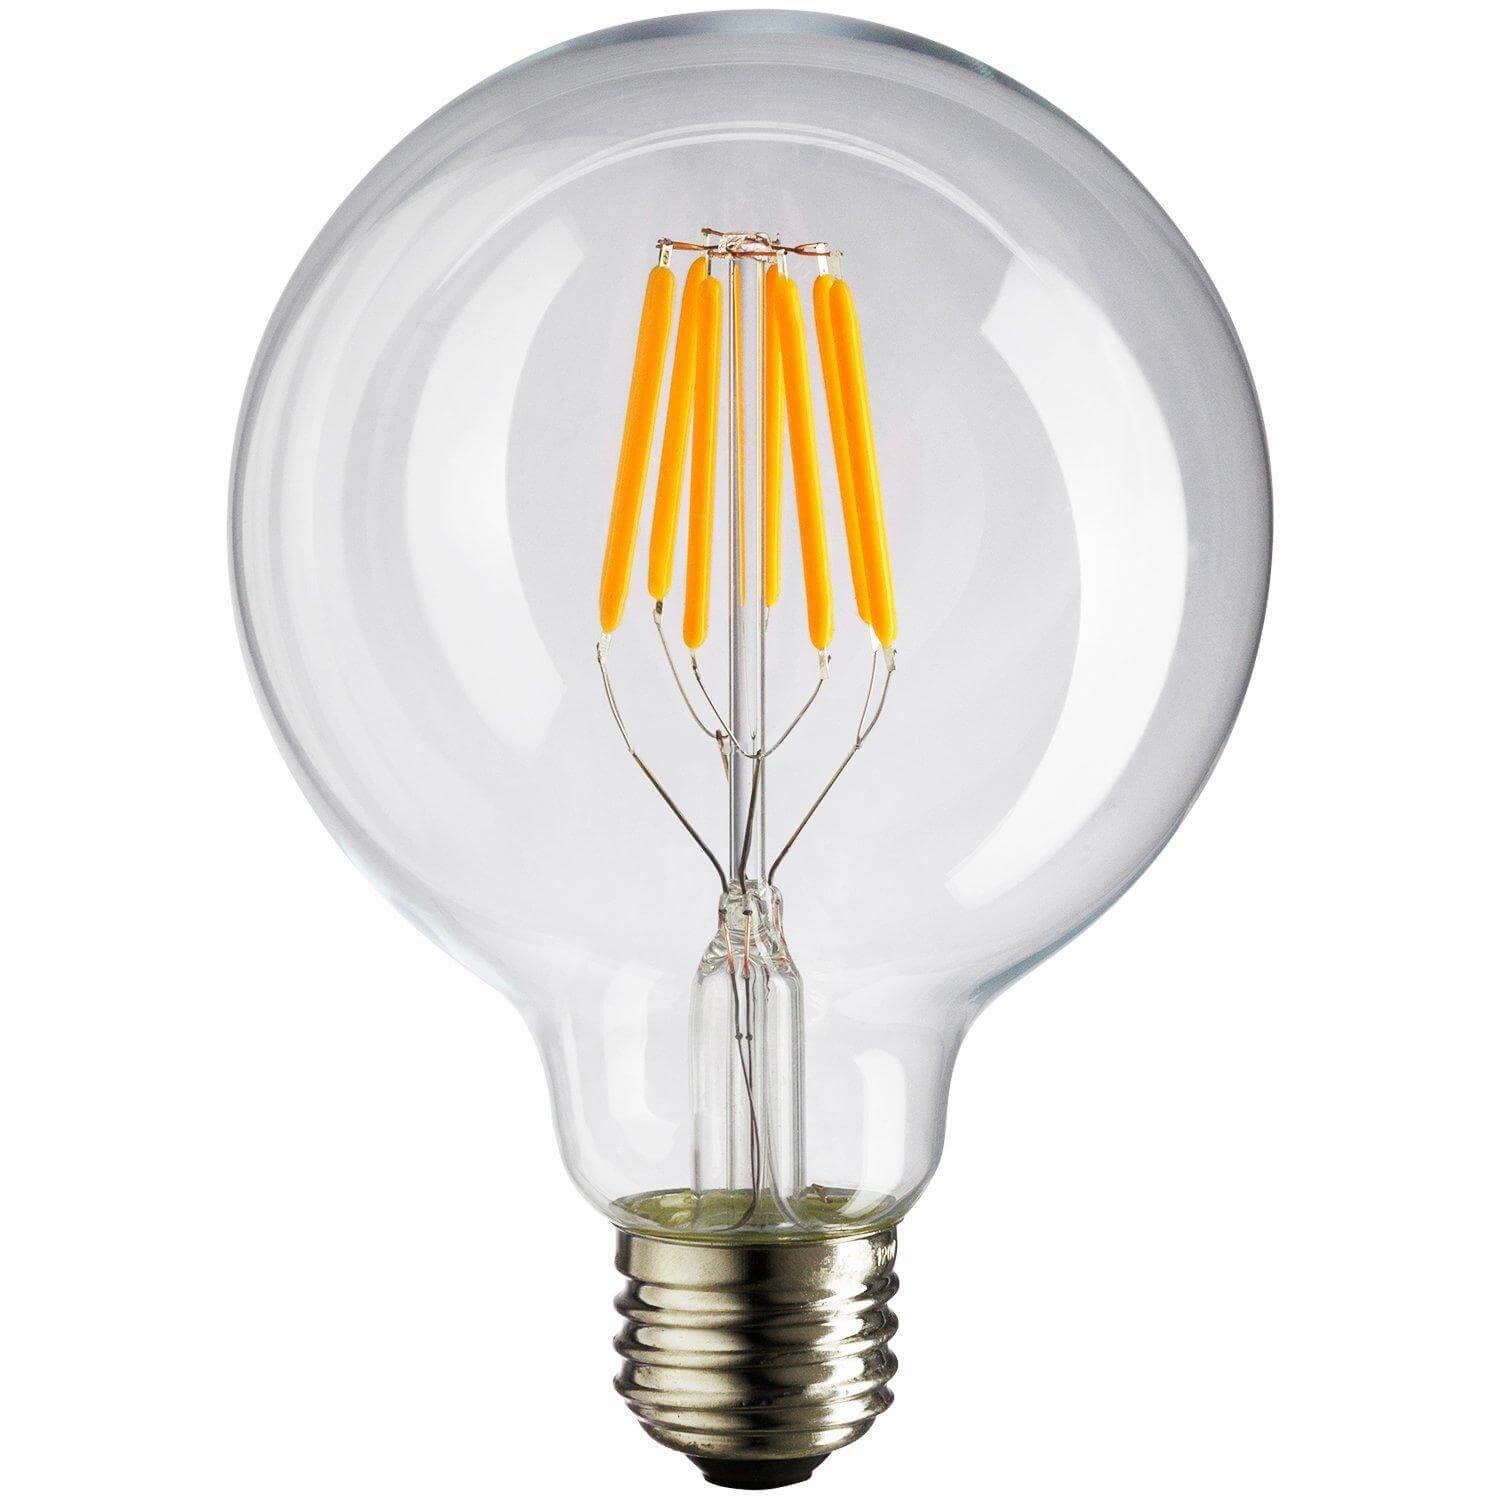 Лампа – Эдисона G80 LED, 6W